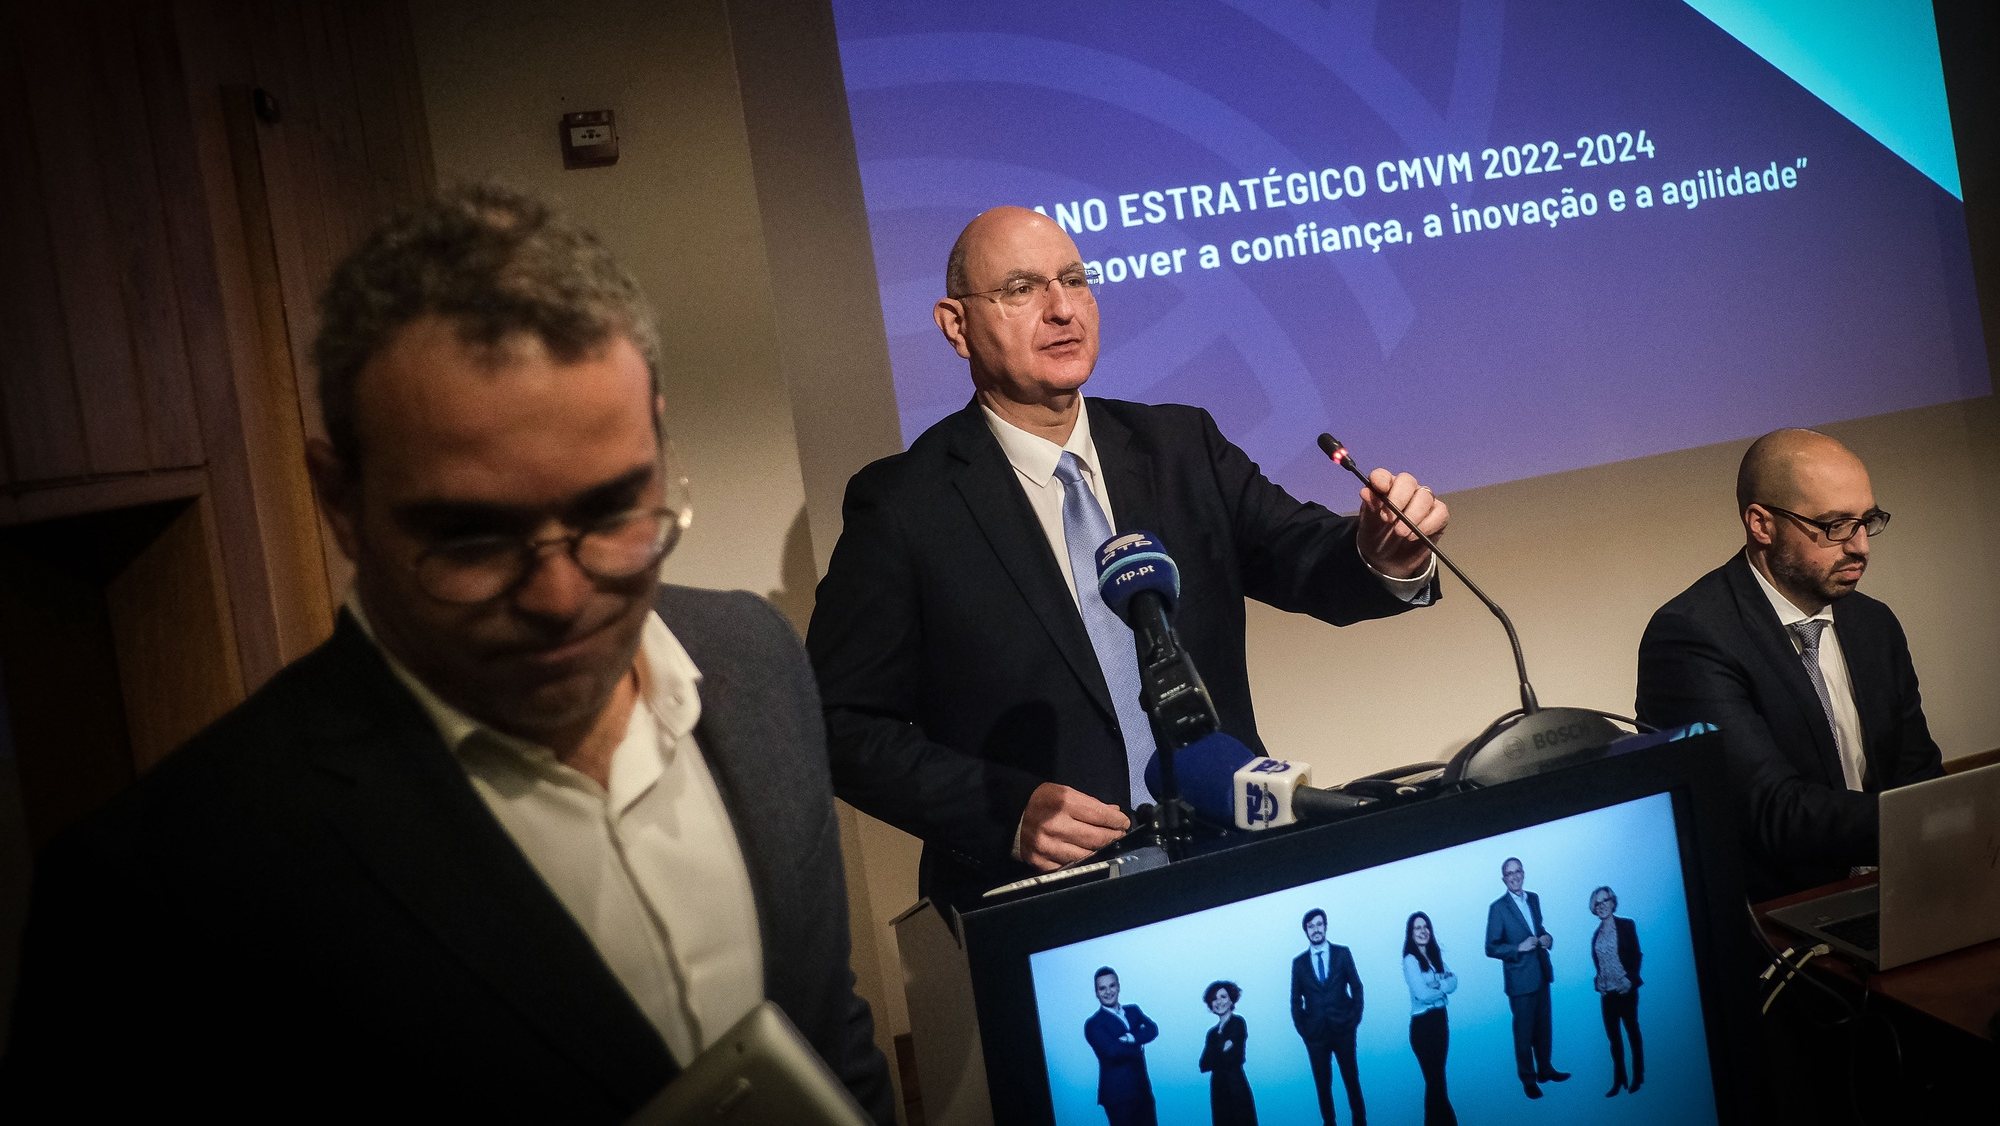 O presidente da Comissão do Mercado de Valores Mobiliários (CMVM), Gabriel Bernardino (C), apresenta o Plano Estratégico para o triénio 2022-2024 e Prioridades para 2022, em Lisboa, 21 de fevereiro de 2022. MÁRIO CRUZ/LUSA